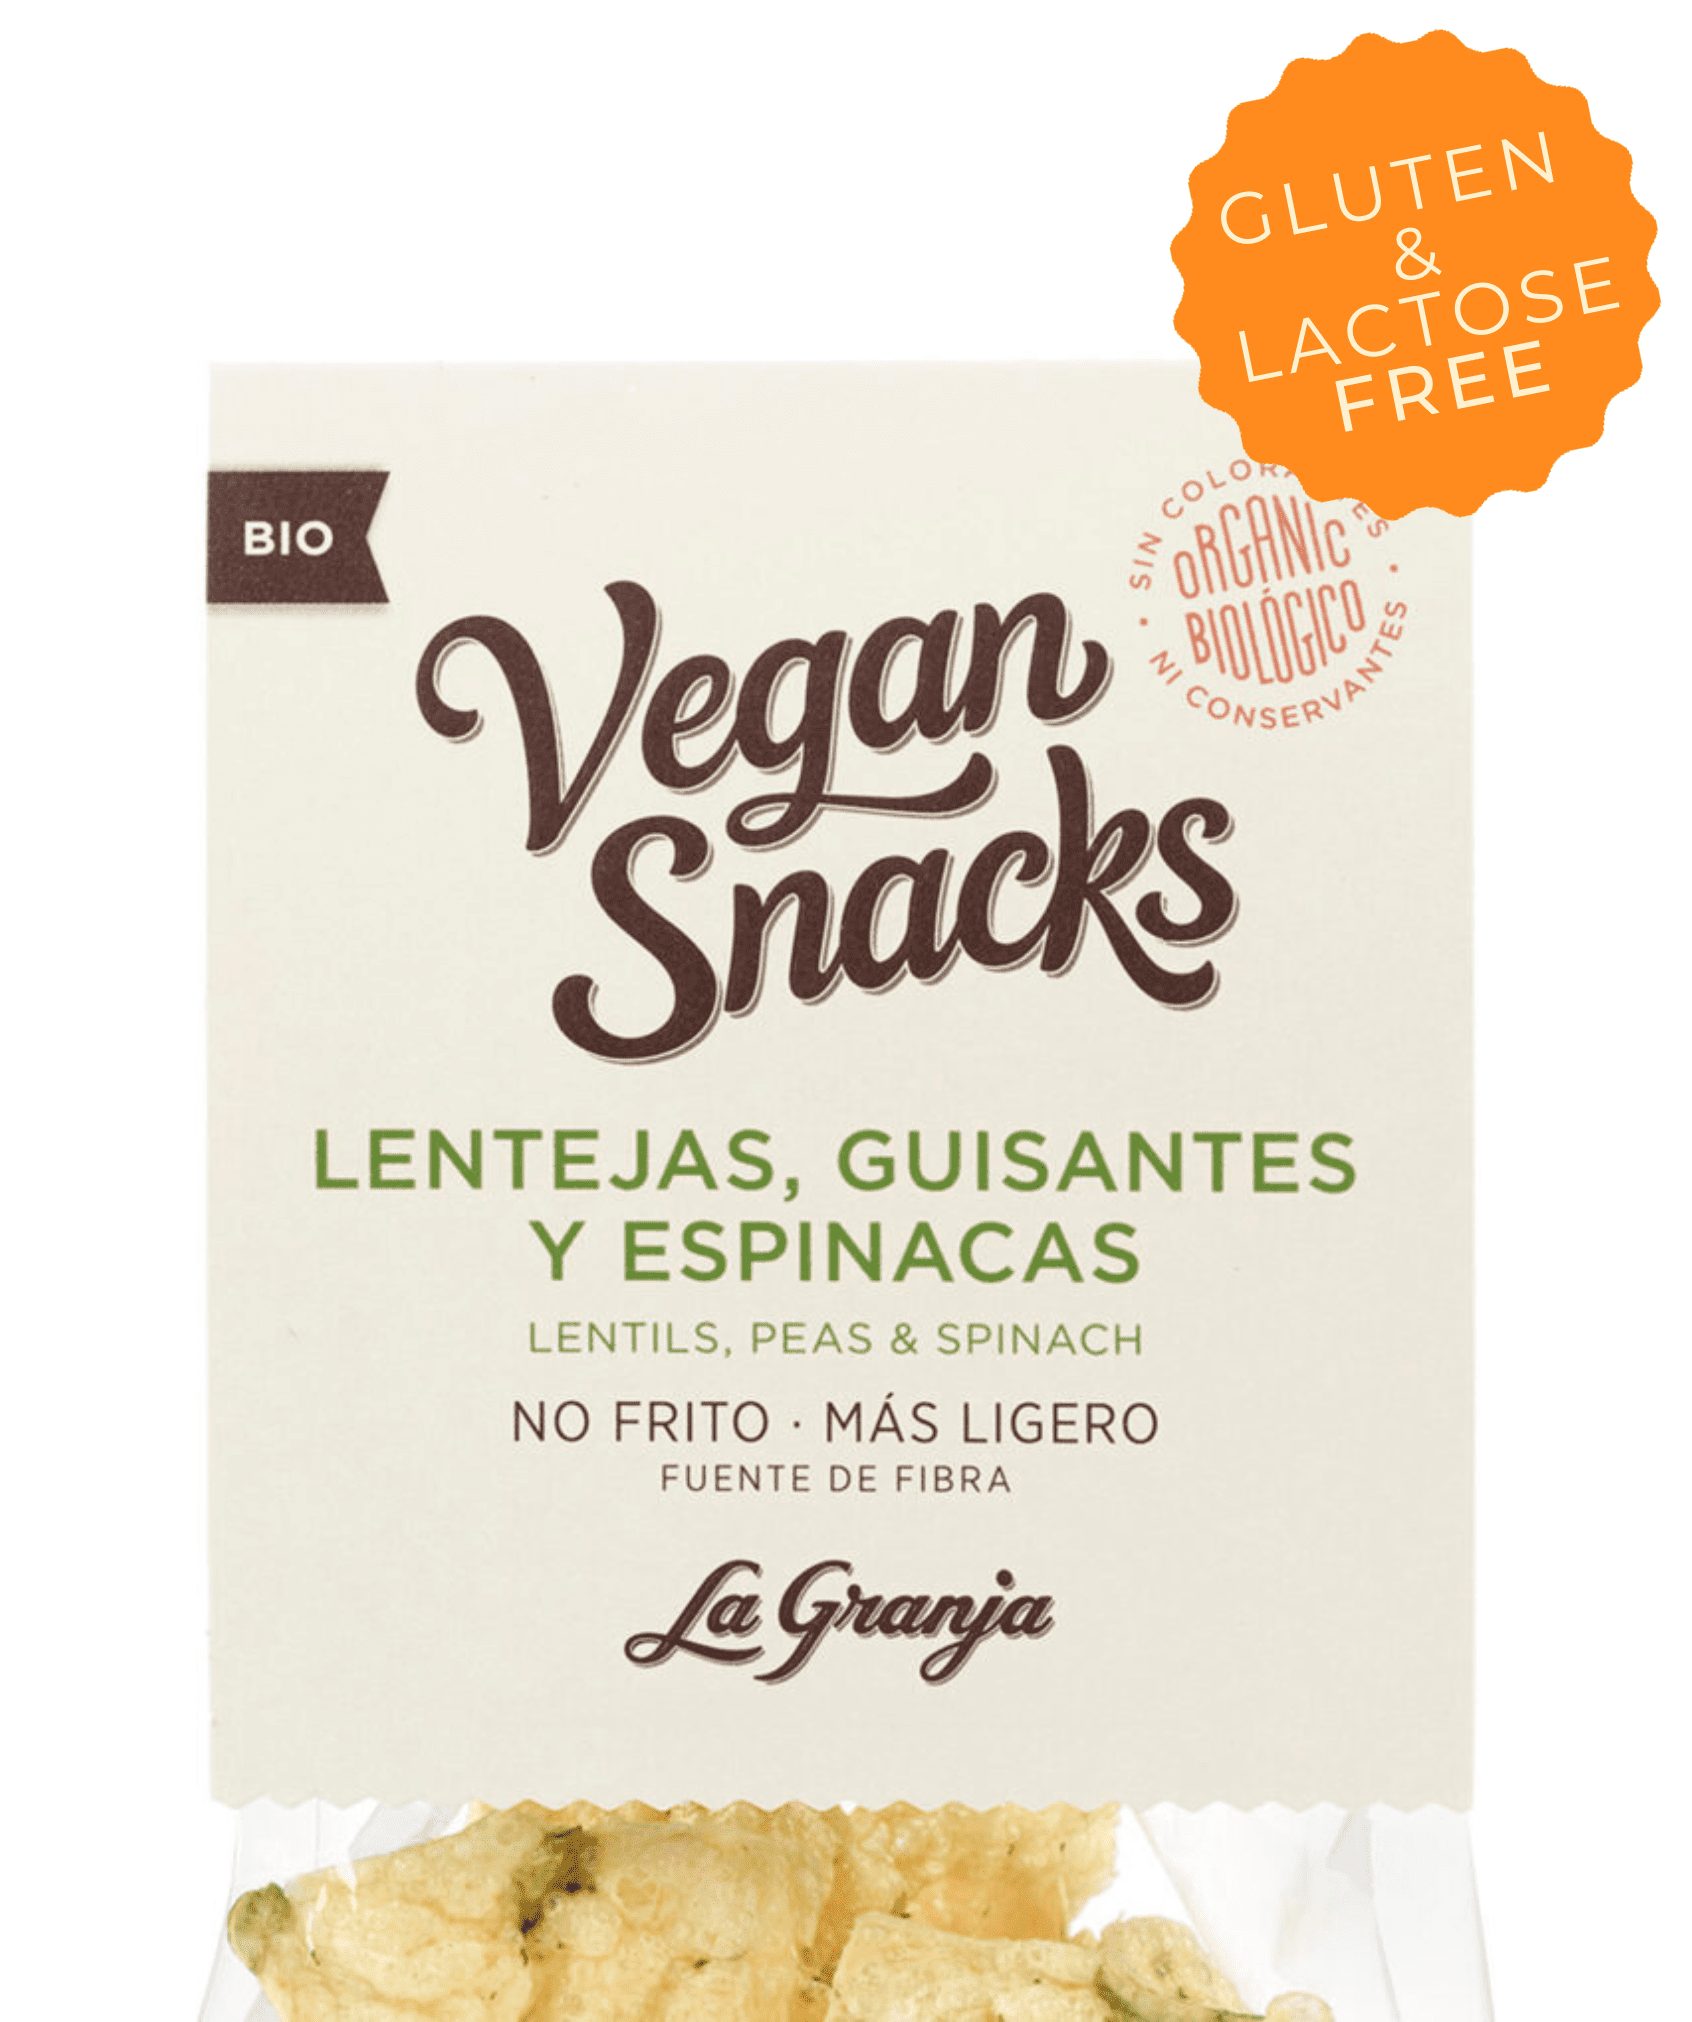 Vegan snacks lenteja, guisantes y espinacas